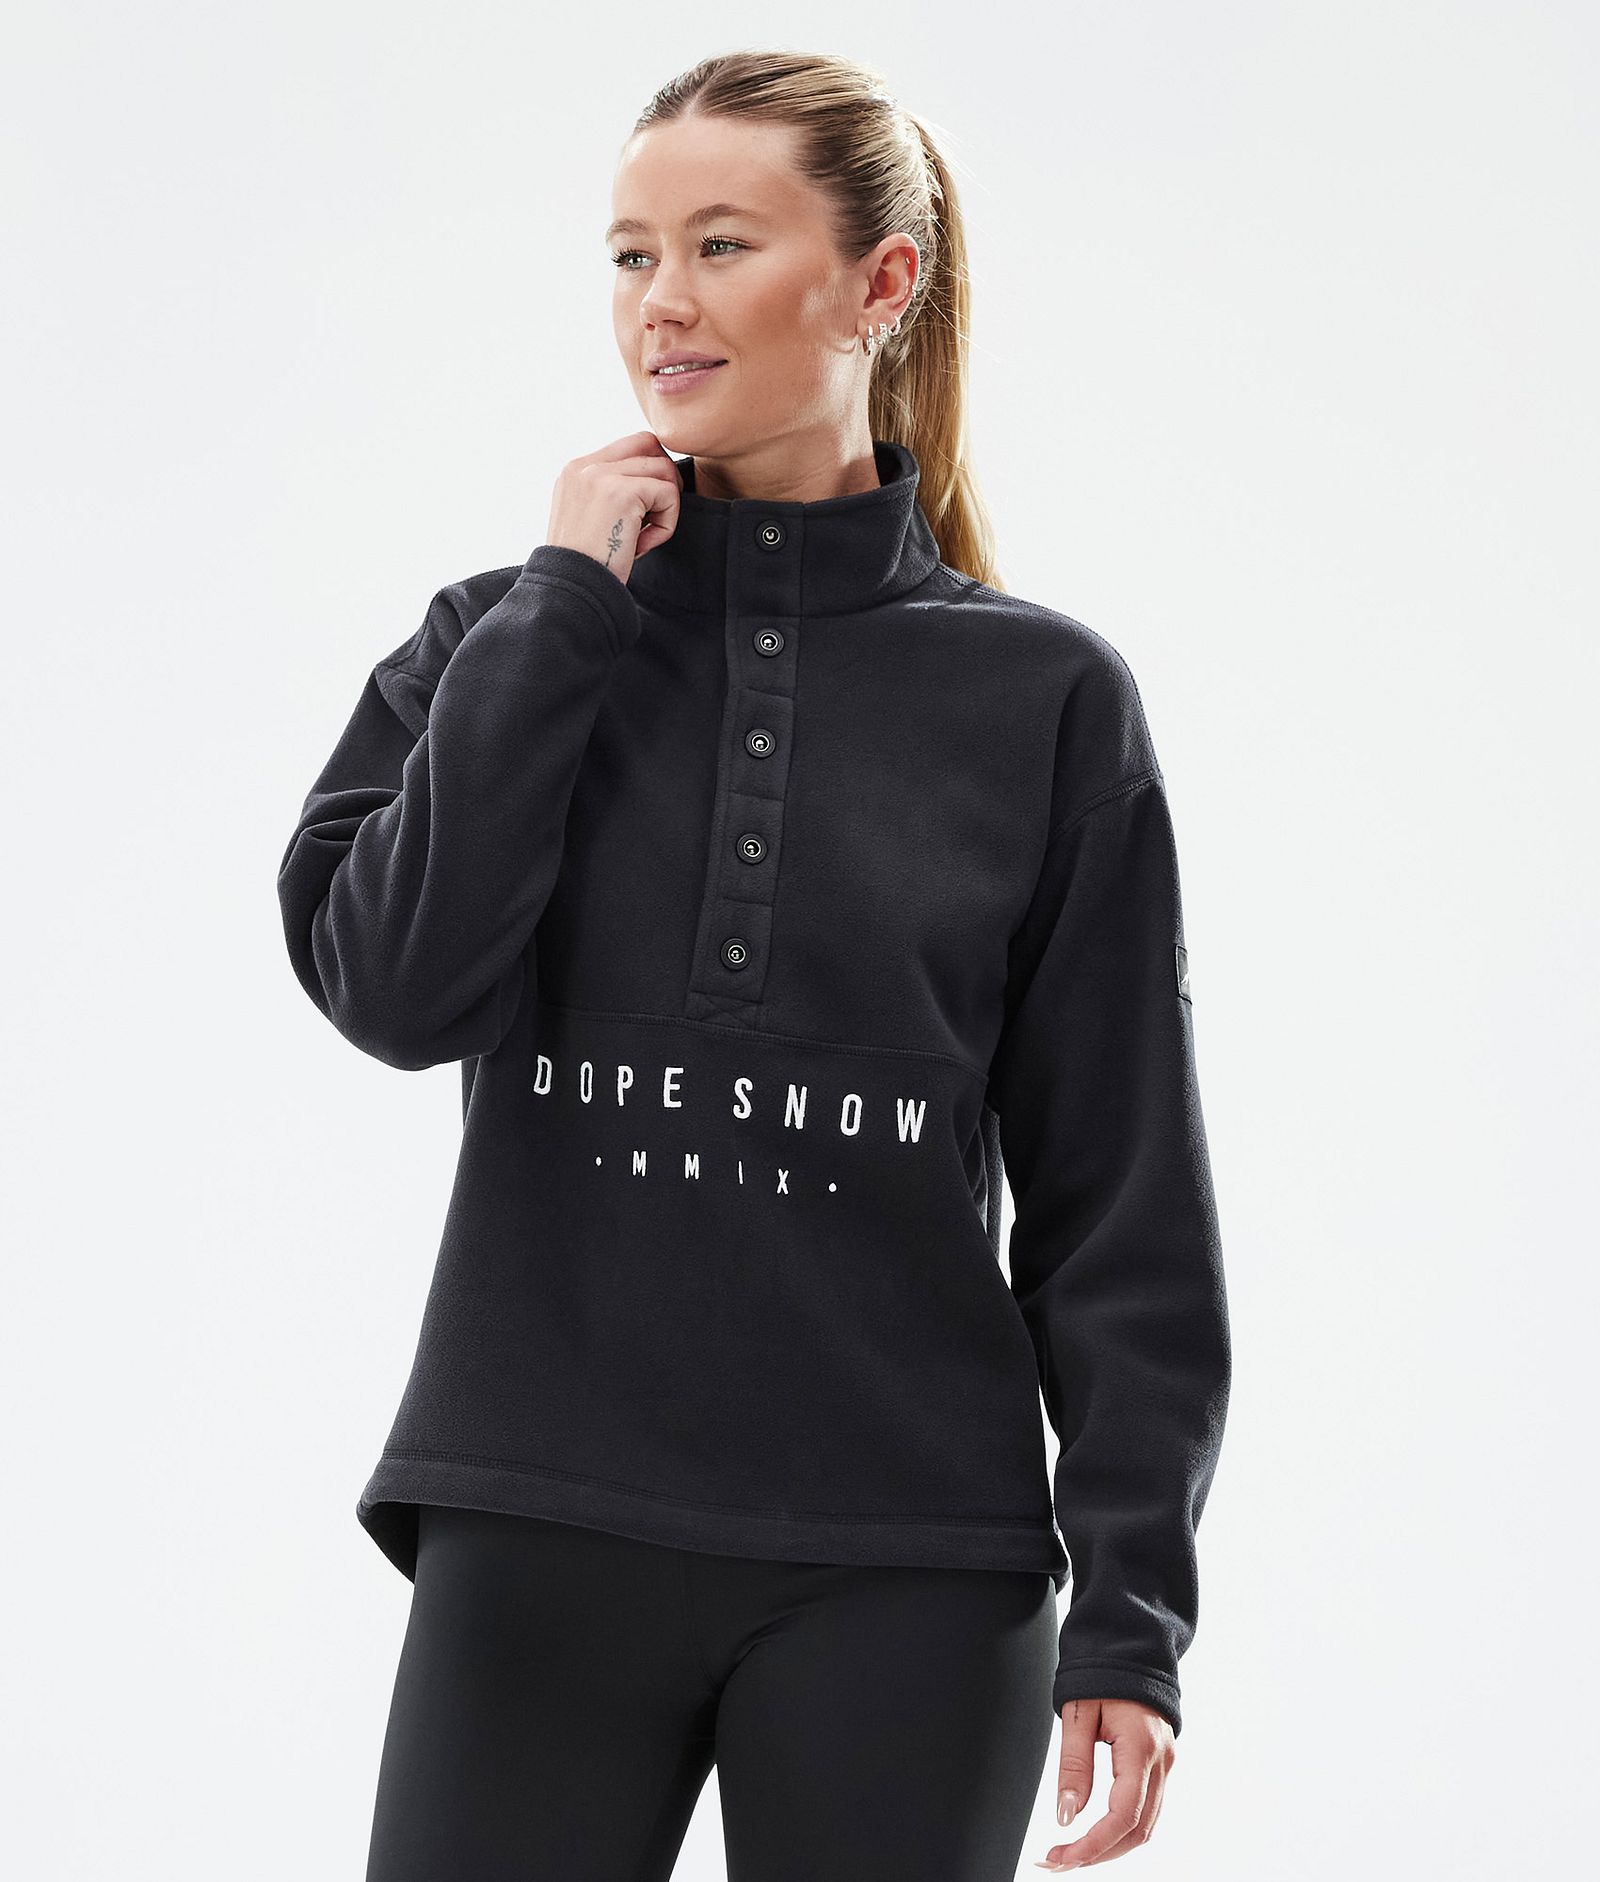 Comfy W Fleece Sweater Women Black Renewed